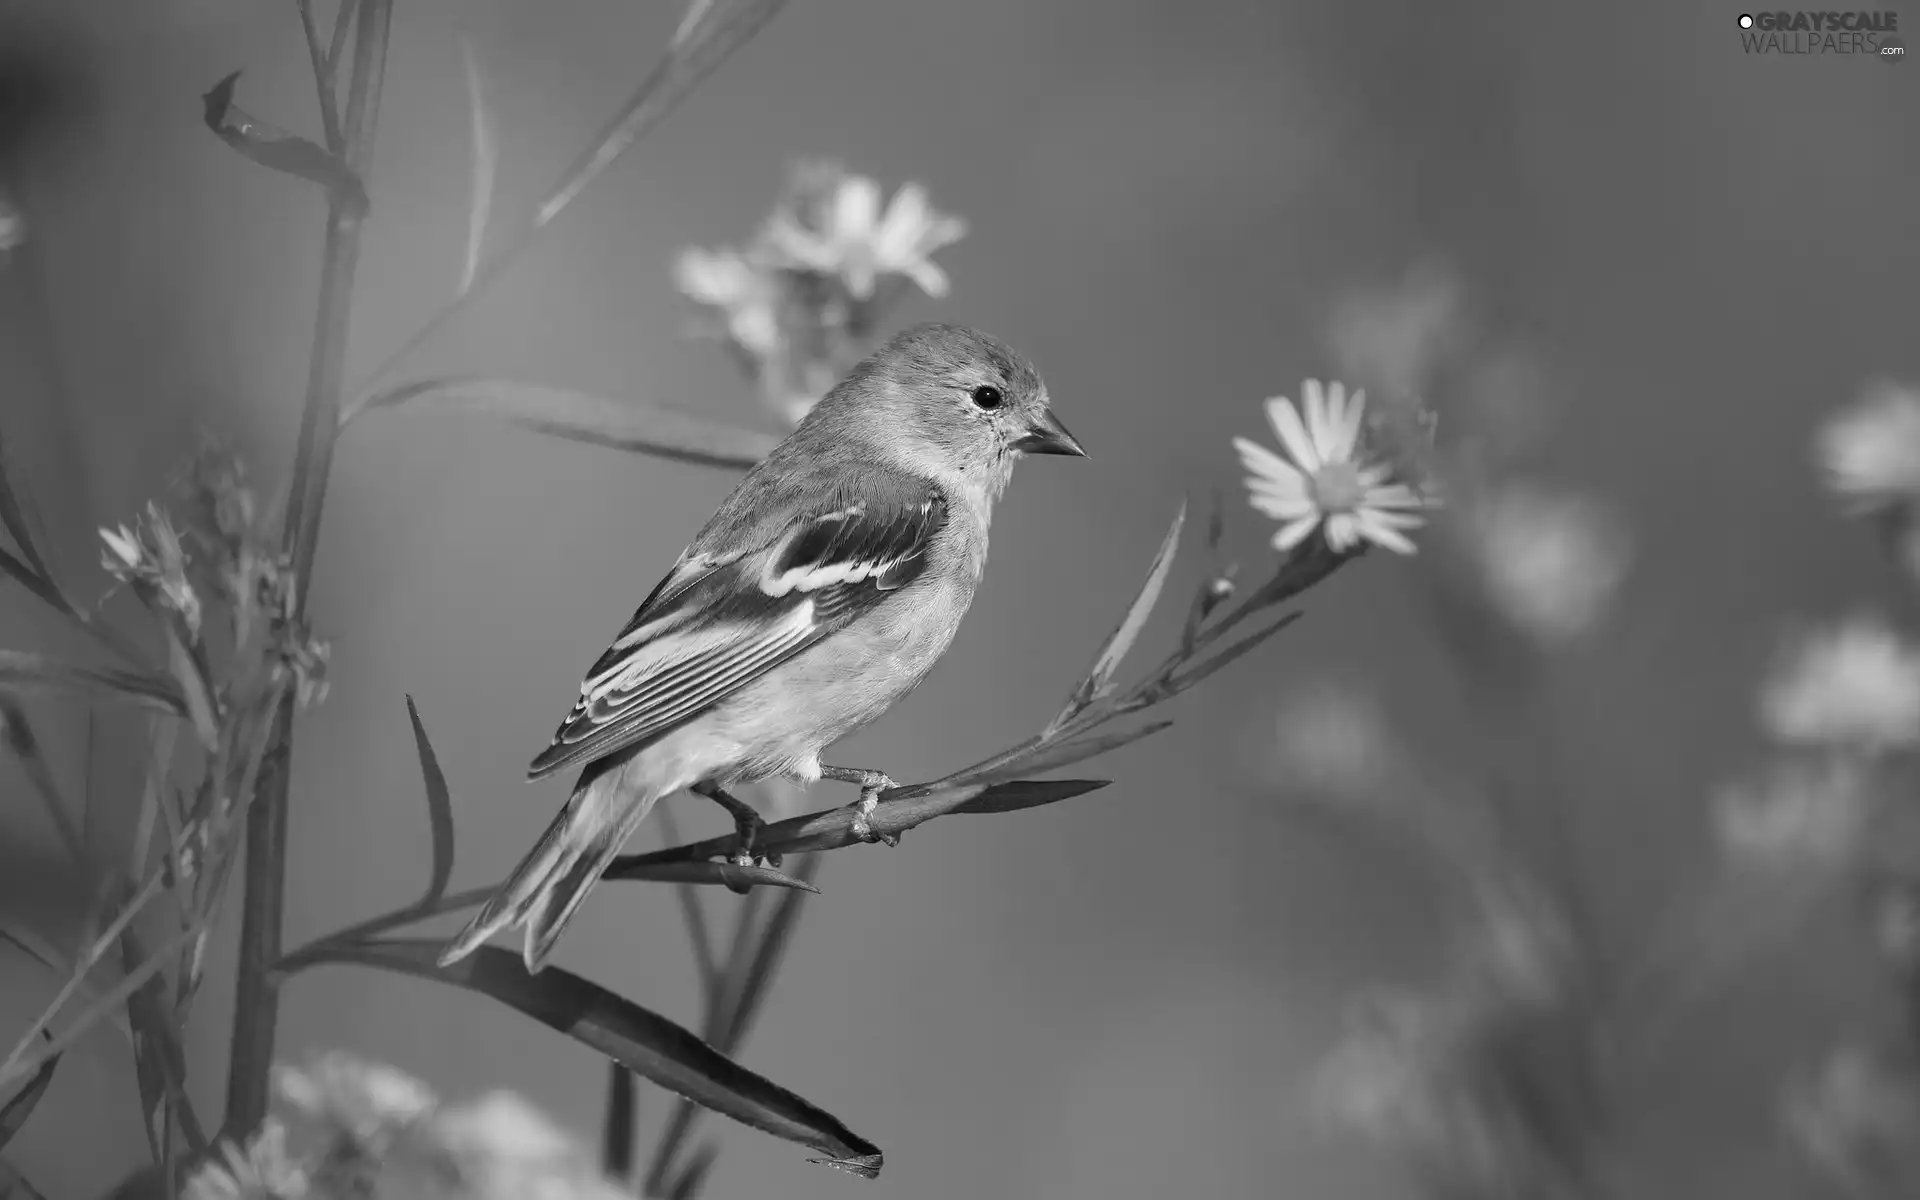 flower, sparrow, twig